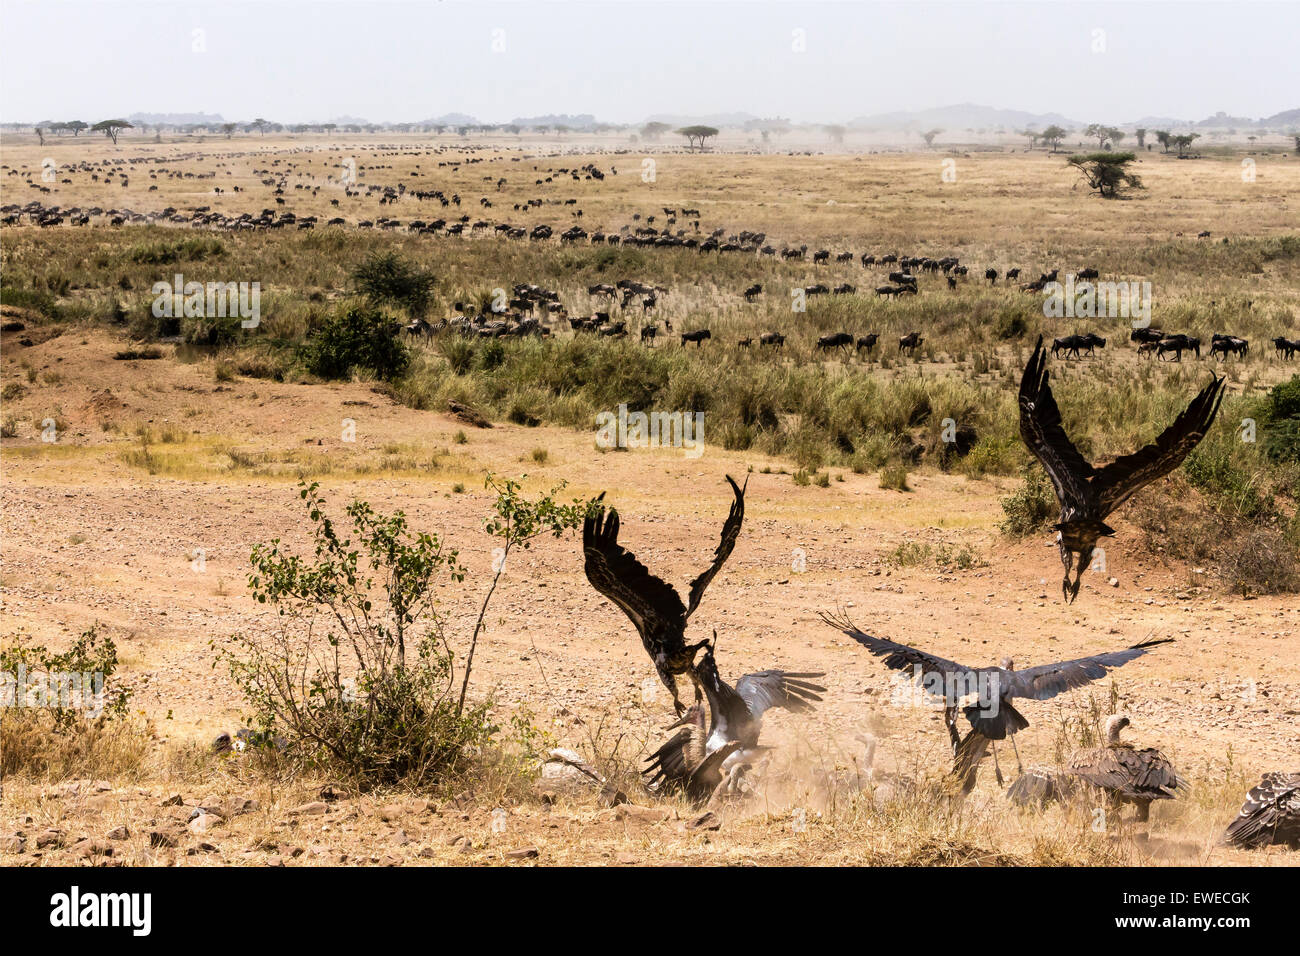 Les longues files de Gnous (Connochaetes taurinus), regardé par les vautours, migrent à la recherche d'herbe fraîche dans le Serengeti en Tanzanie Banque D'Images